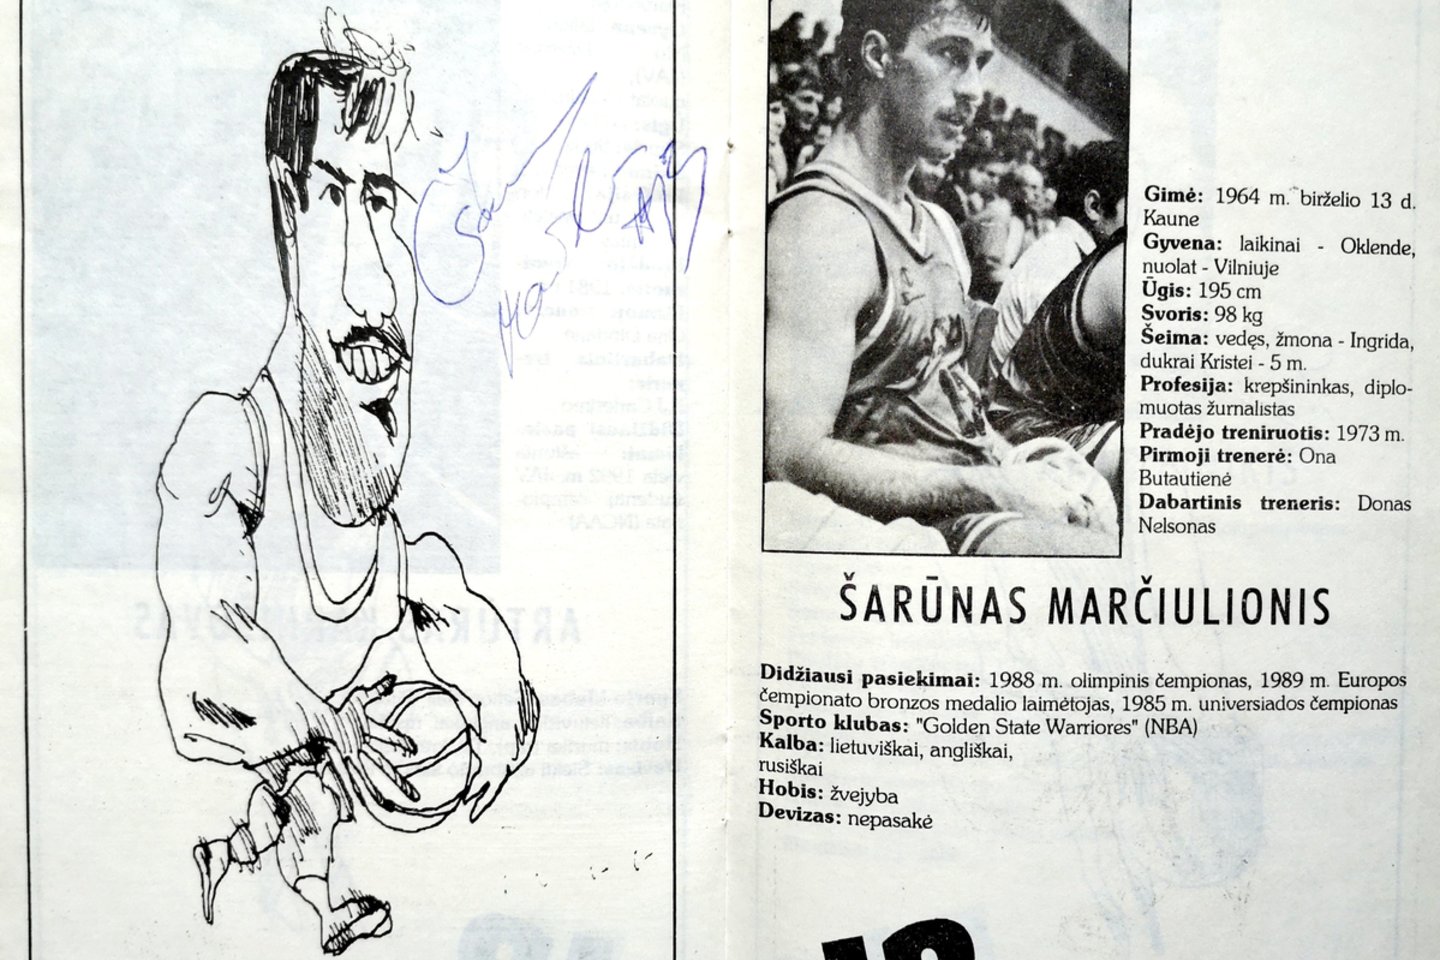 Š.Marčiulionis pirmasis europietis, pravėręs langą į NBA - stipriausią pasaulyje krepšinio lygą<br>V.Ališausko archyvas. 